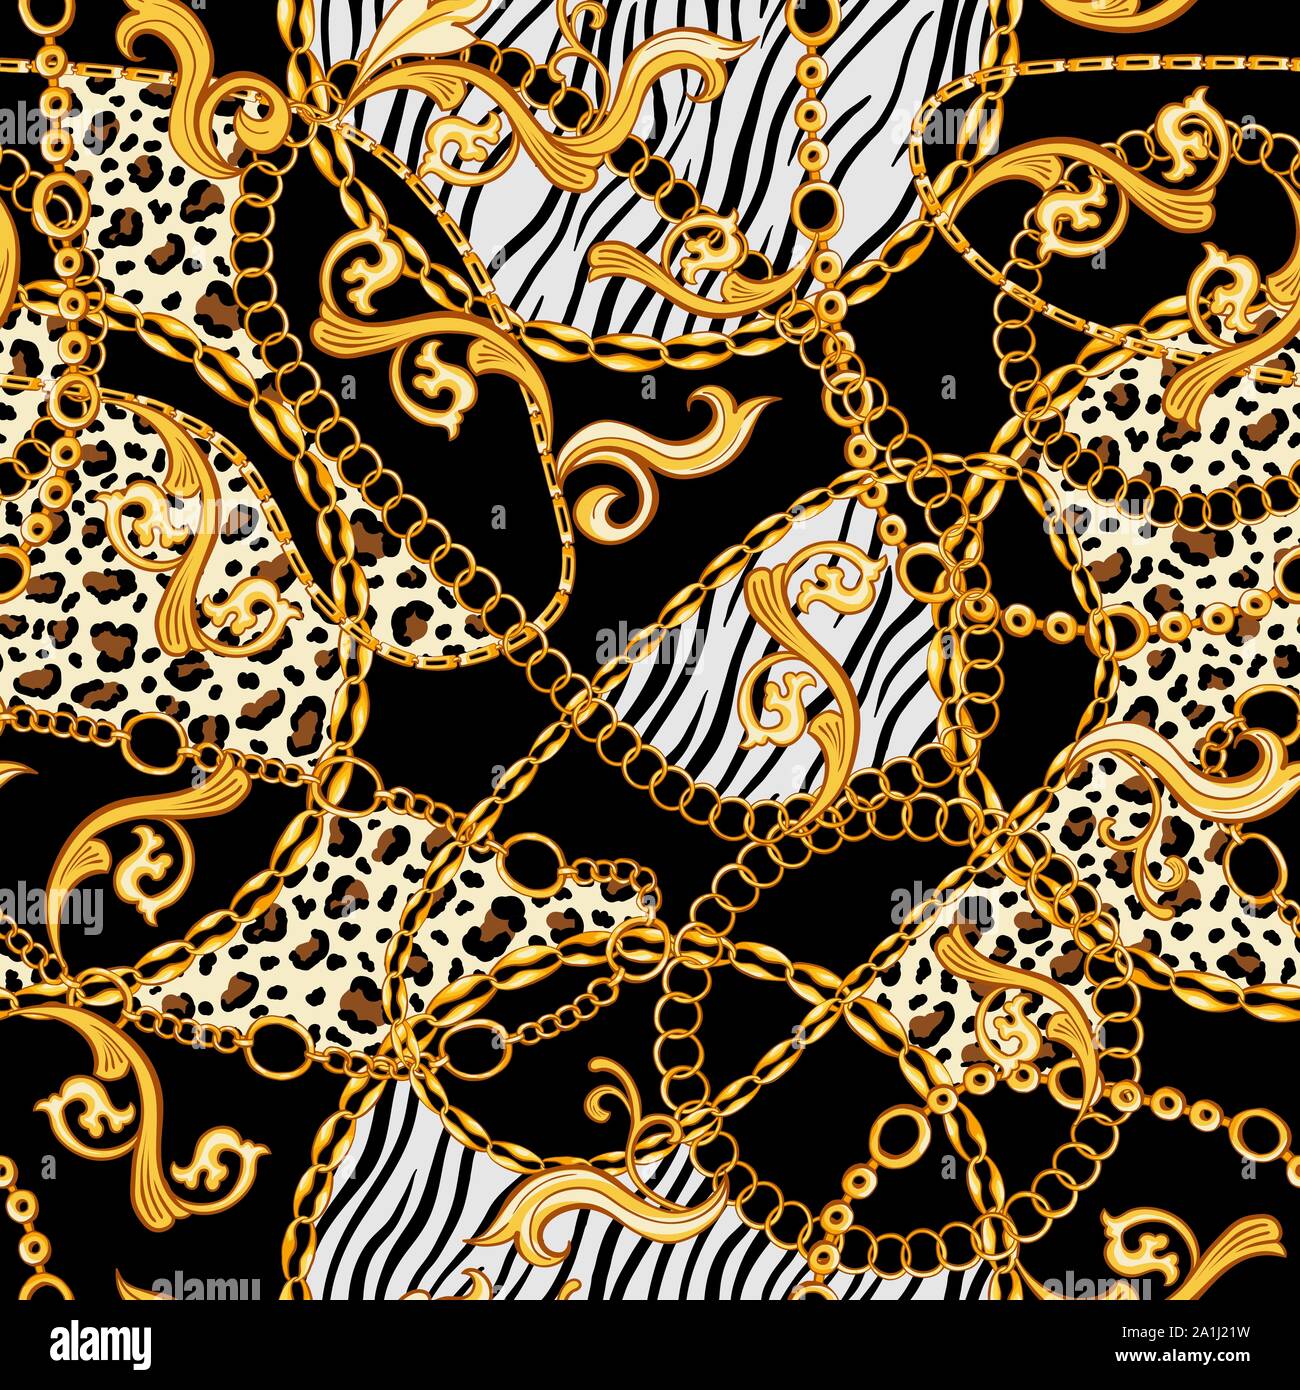 Les chaînes d'or, ornements Baroque mélangé avec Tiger et Modèles animaux zèbre. Modèle transparent avec fond noir. Les années 80 la mode stylisé Illustration de Vecteur